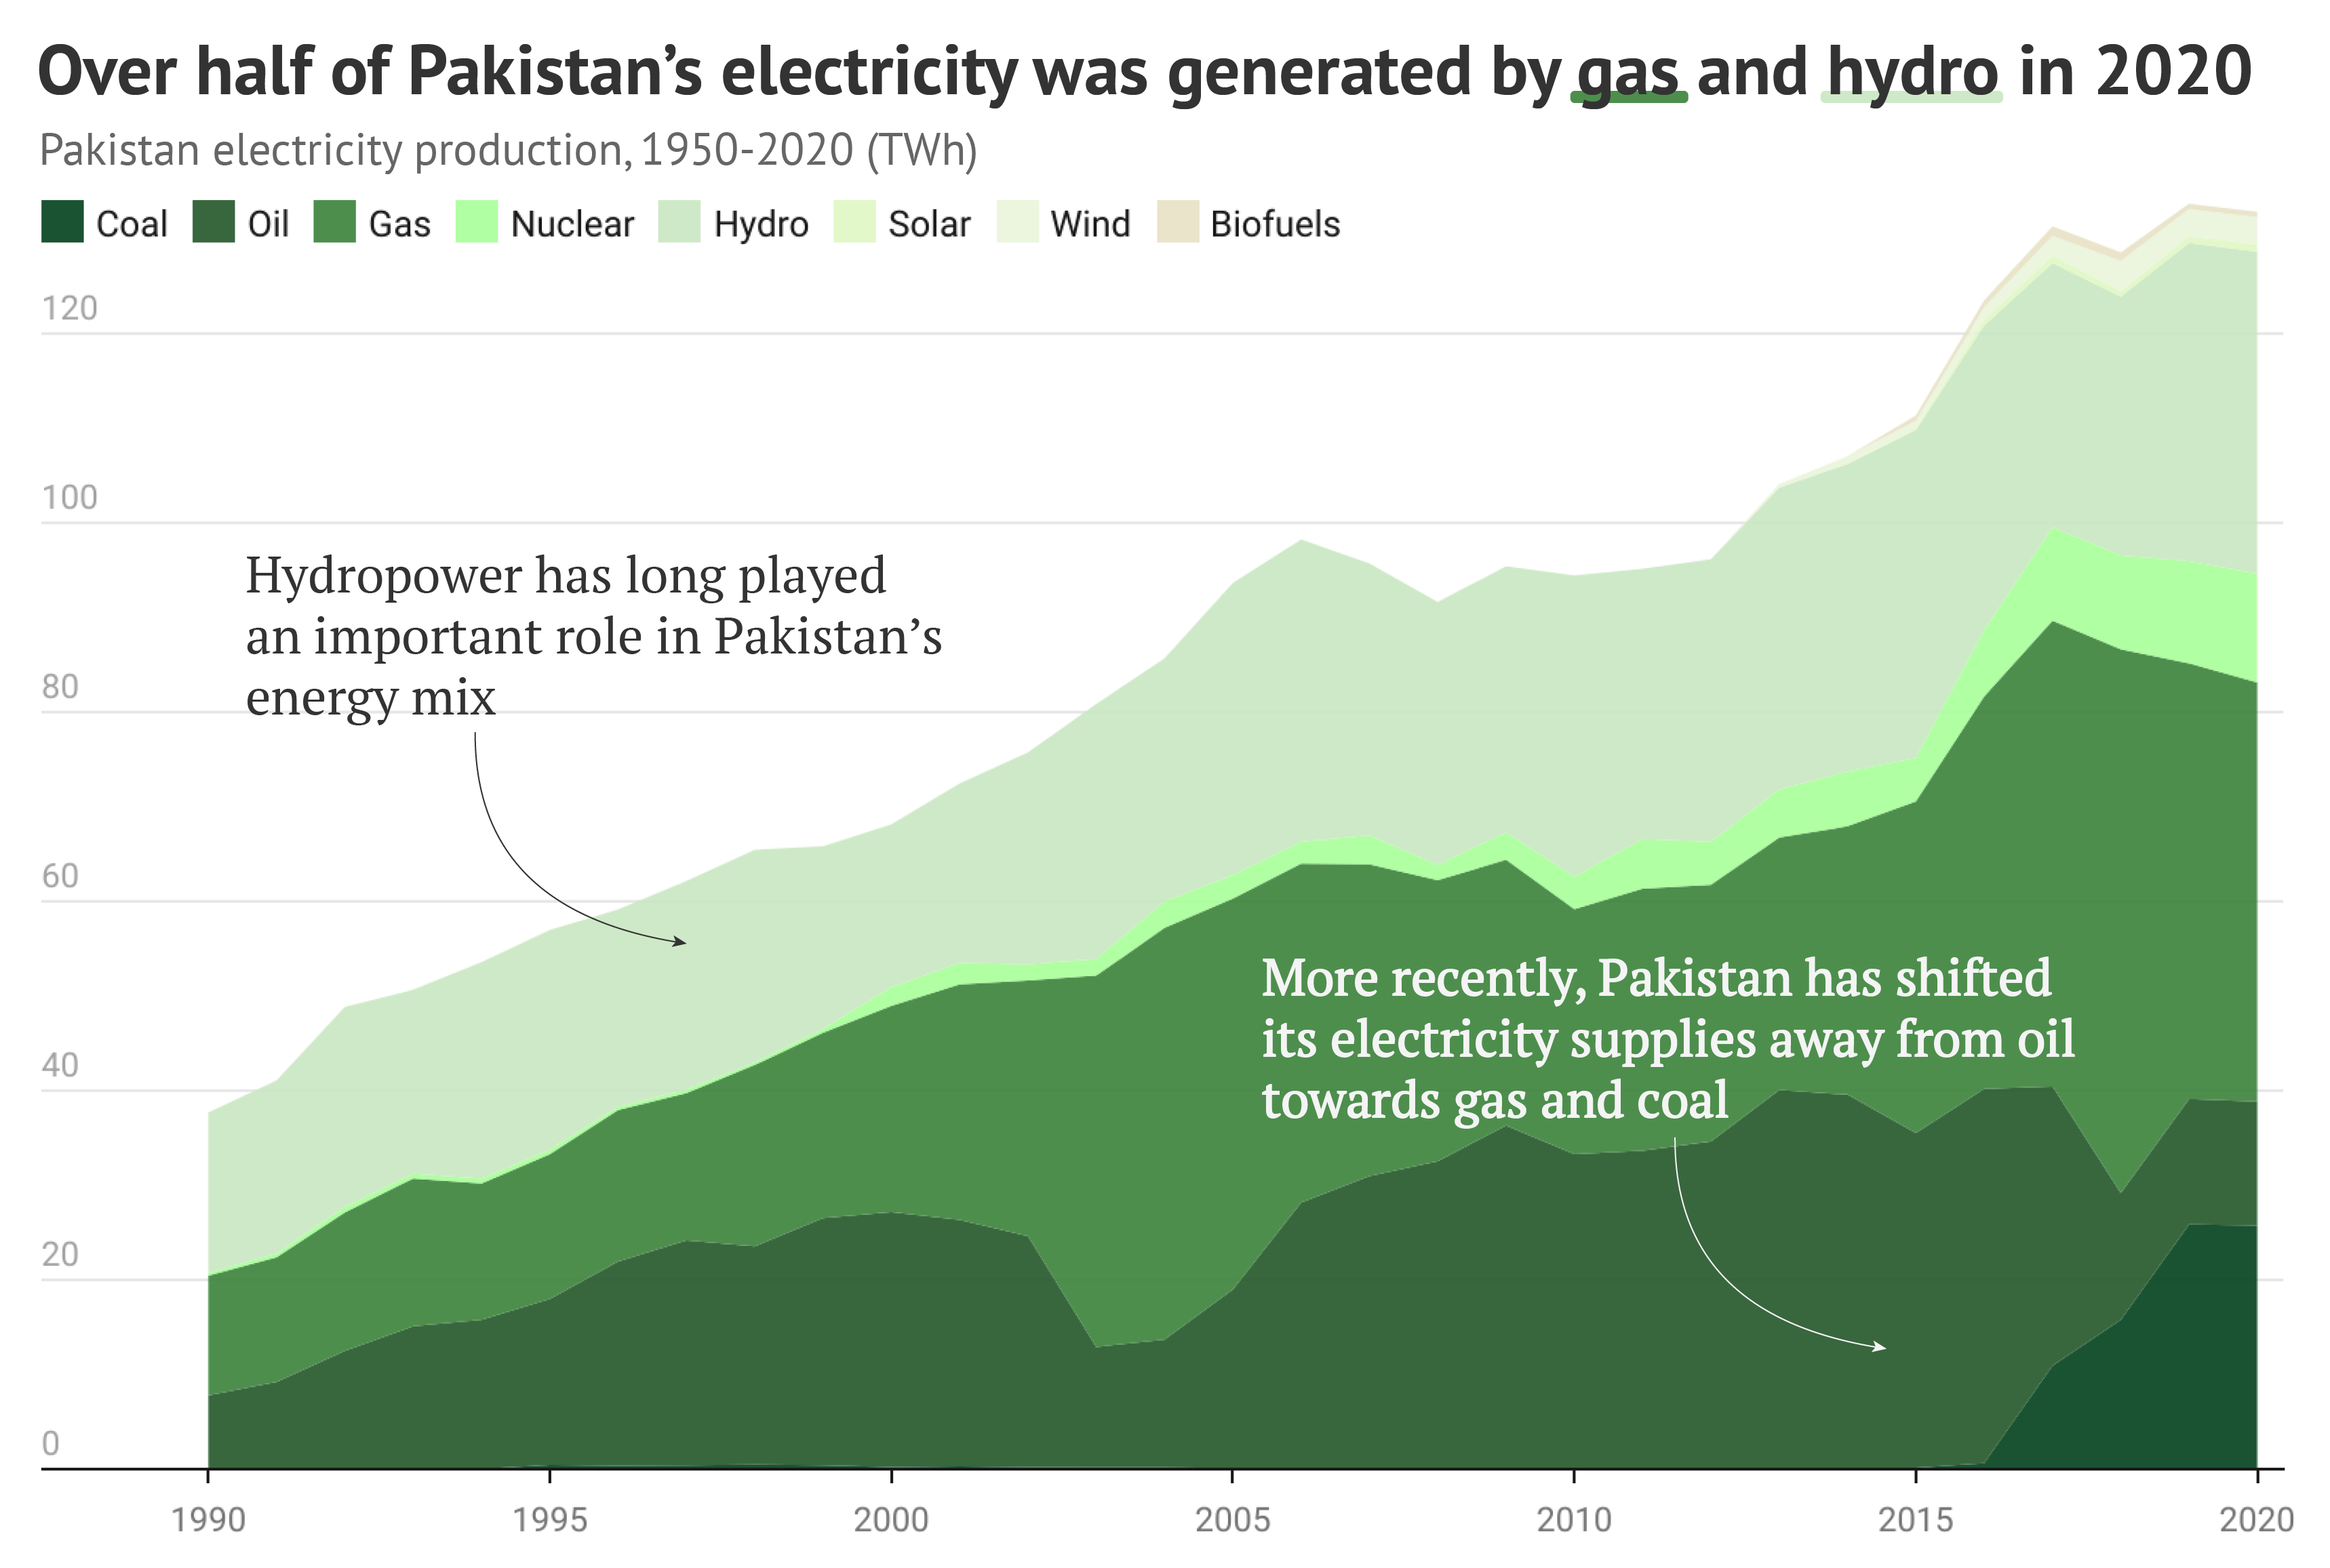 يوضح الرسم البياني أن أكثر من نصف الكهرباء في باكستان تم توليدها من الغاز والطاقة المائية في عام 2020.